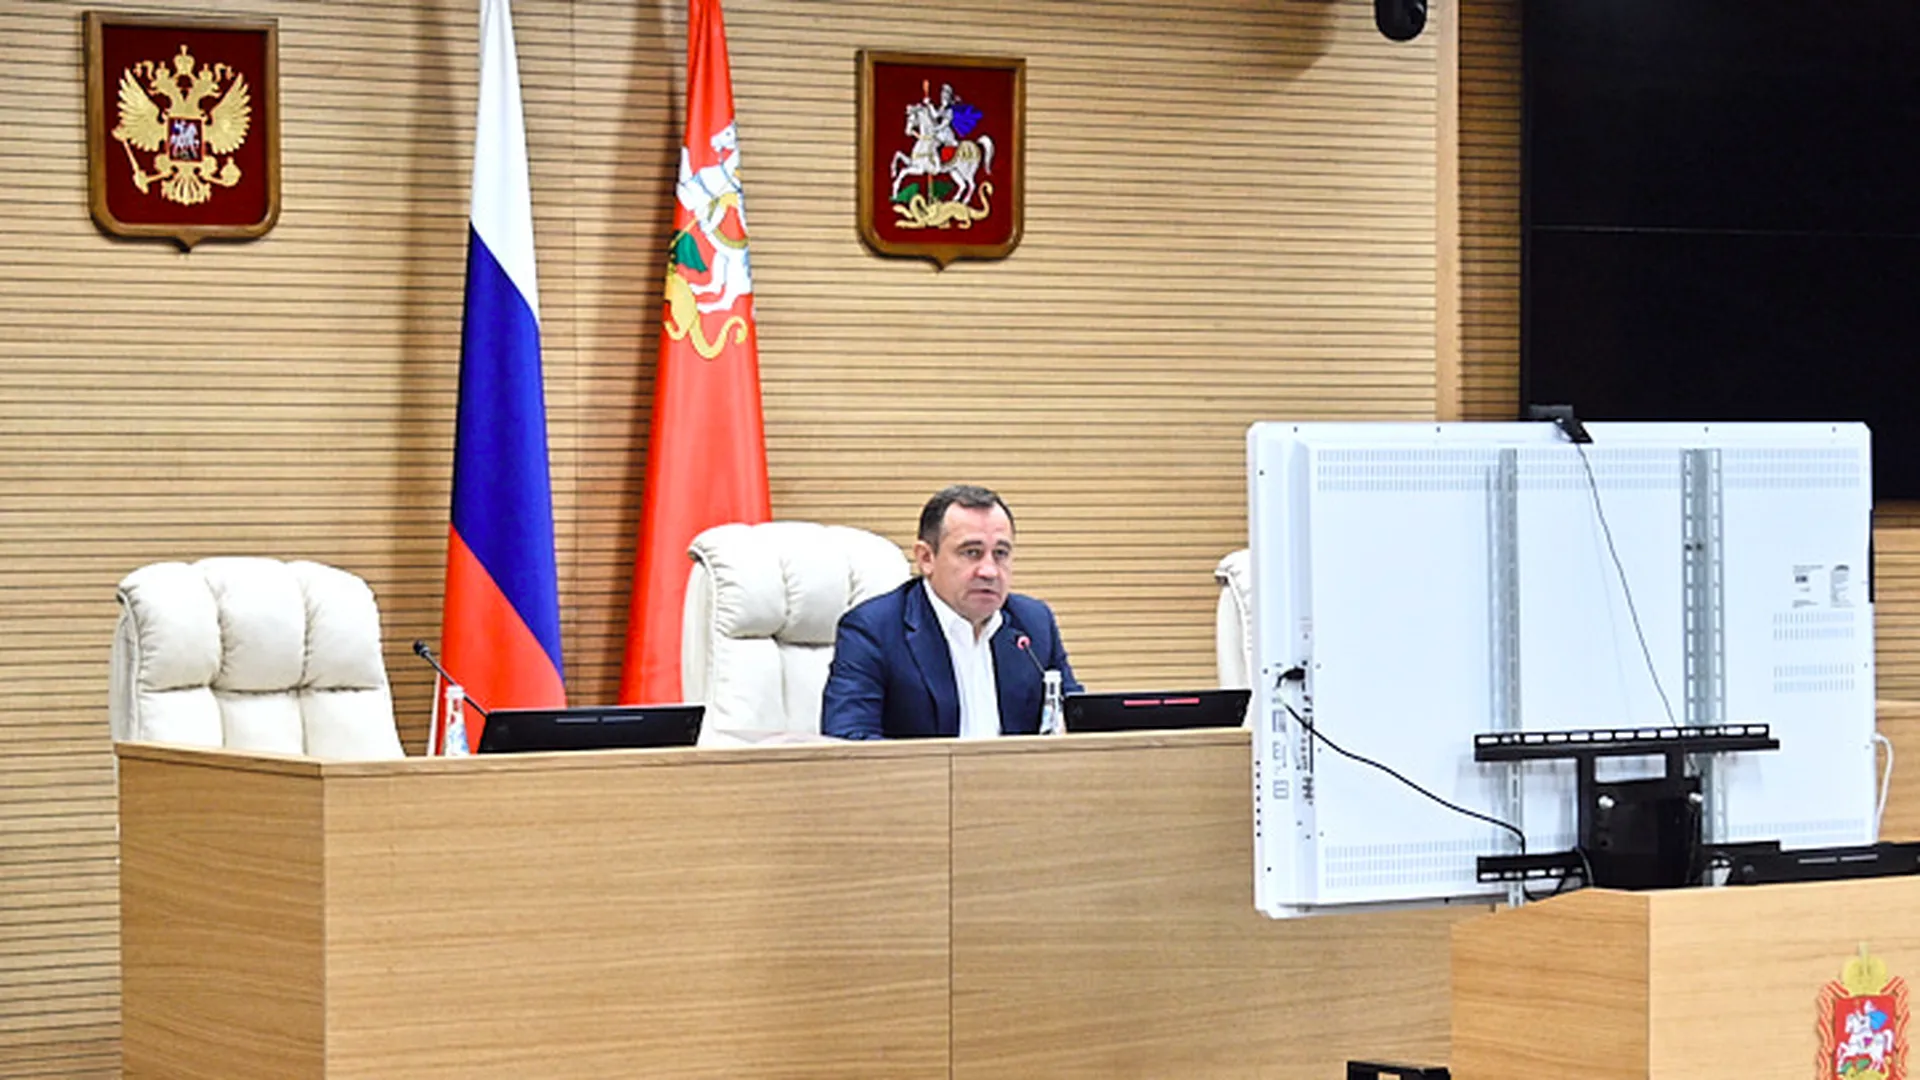 Брынцалов: парламент Подмосковья окажет правовую помощь новым регионам России